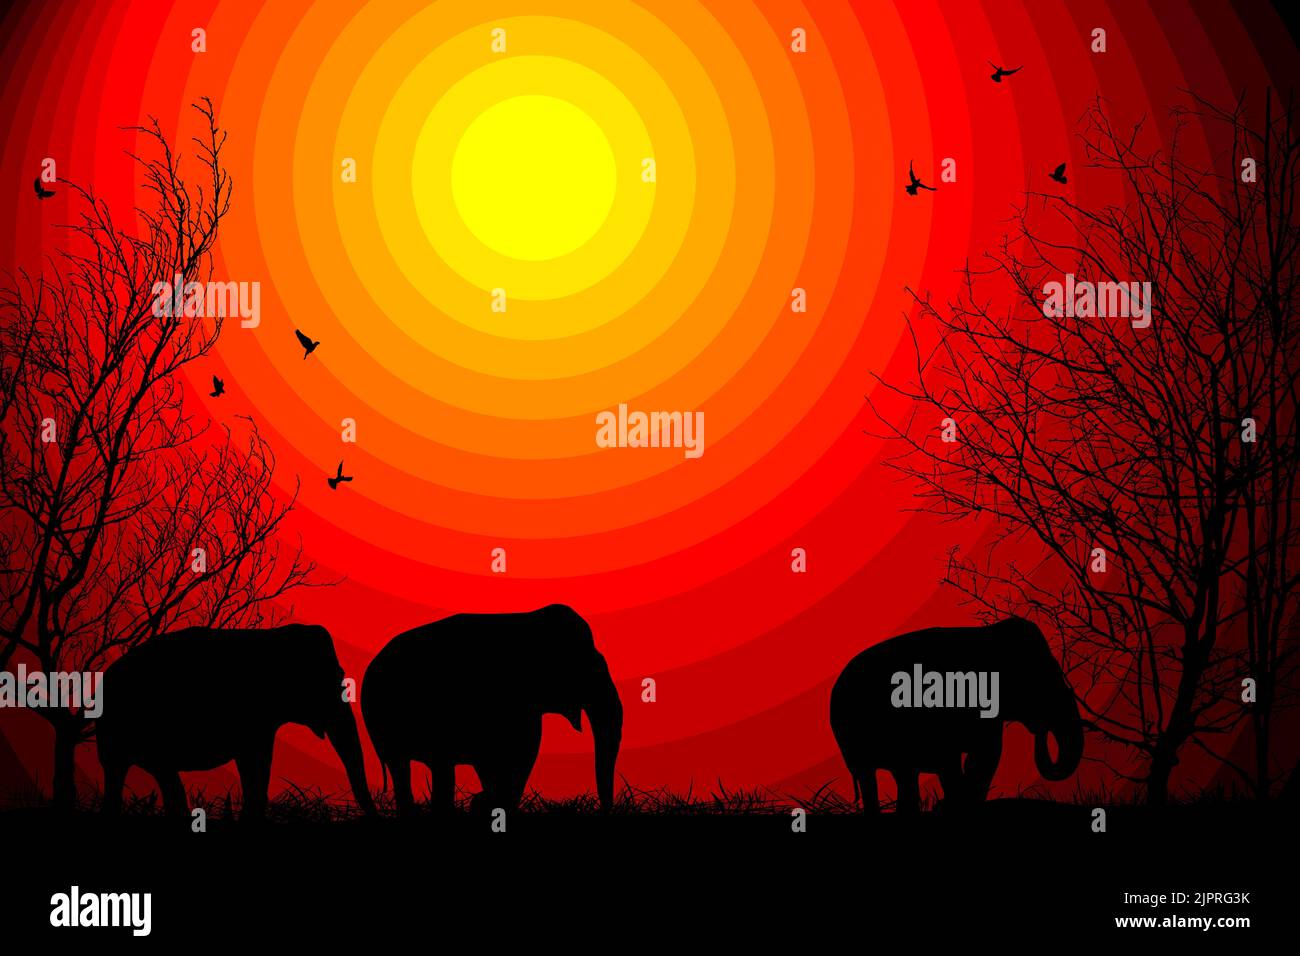 Des éléphants et des silhouettes d'arbres sur fond de coucher de soleil africain, illustration vectorielle Banque D'Images